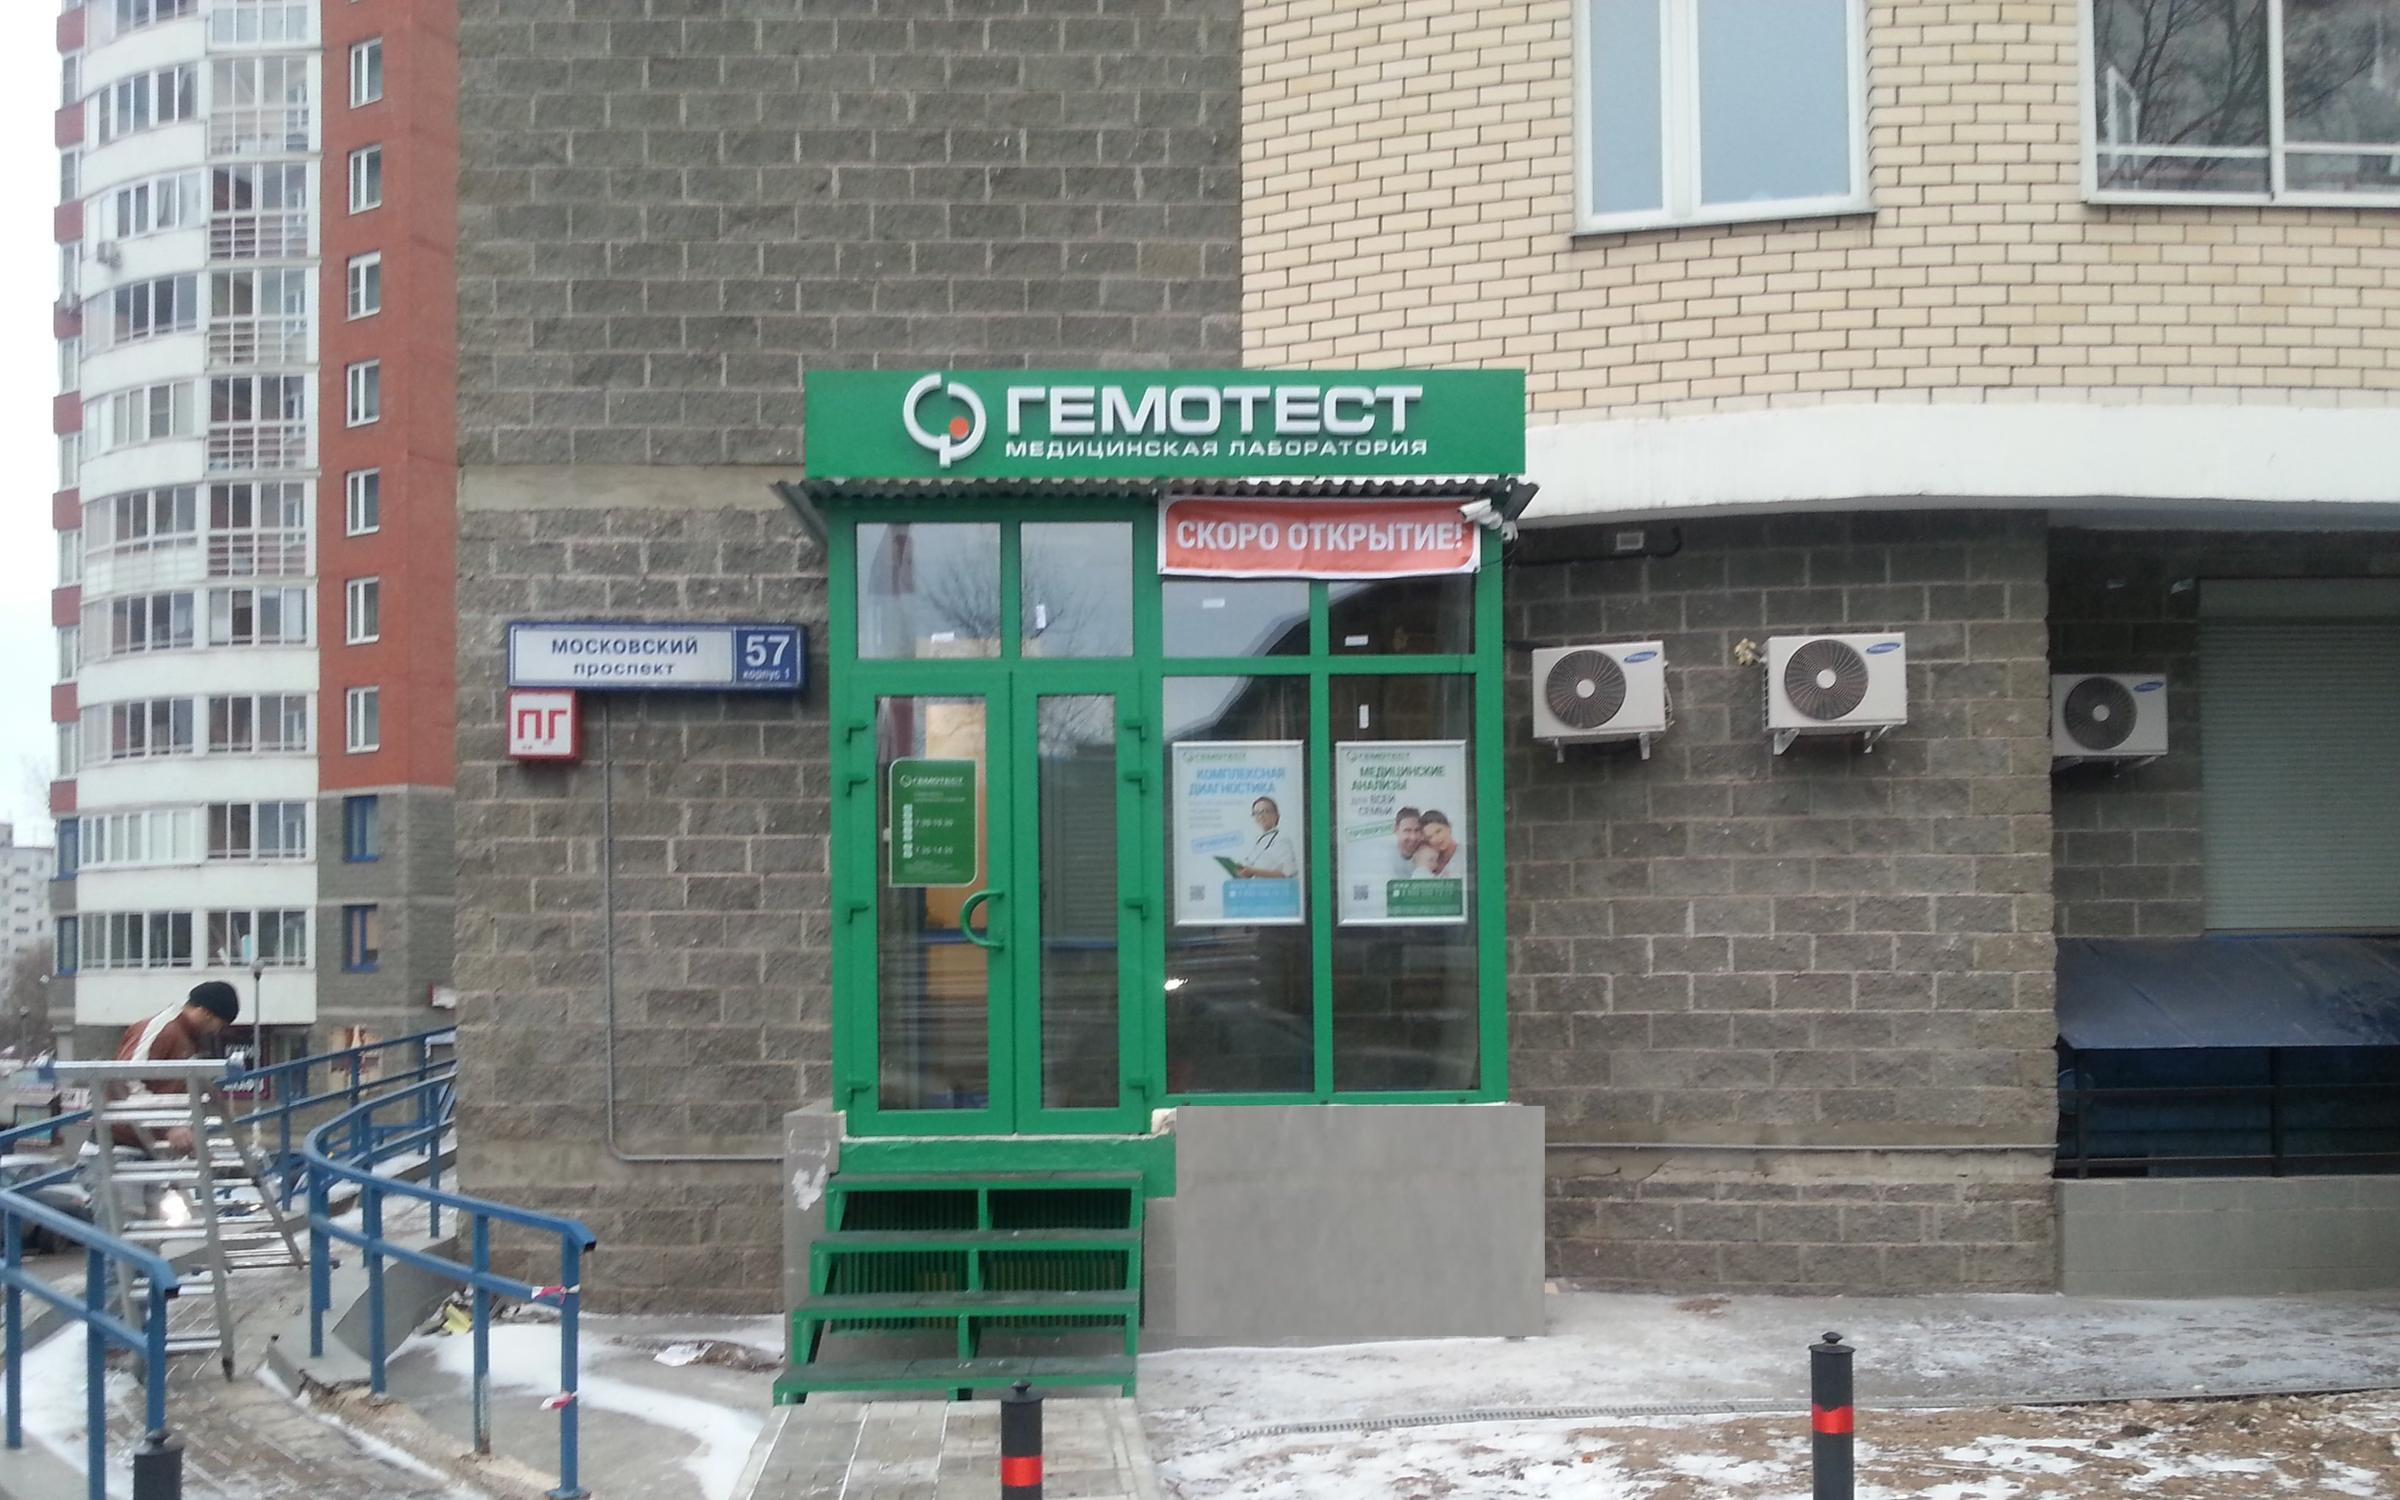 Московский клиника гемотест